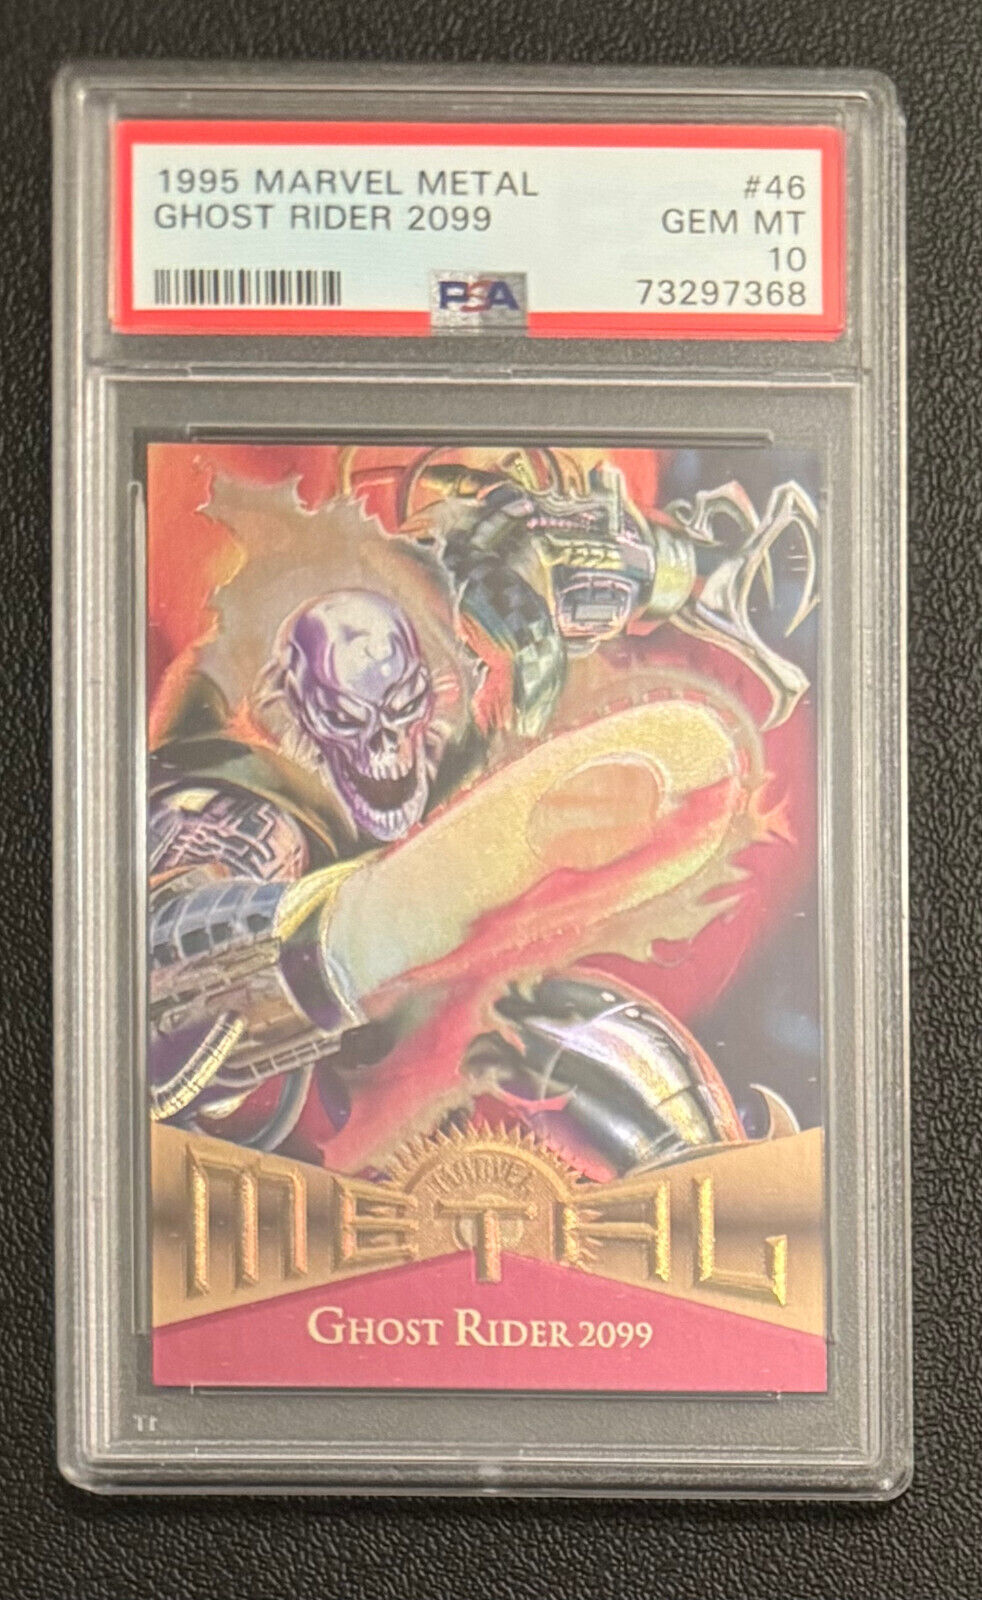 1995 Fleer Marvel Metal GHOST RIDER 2099 PSA 10 Card #46 GEM MT Graded